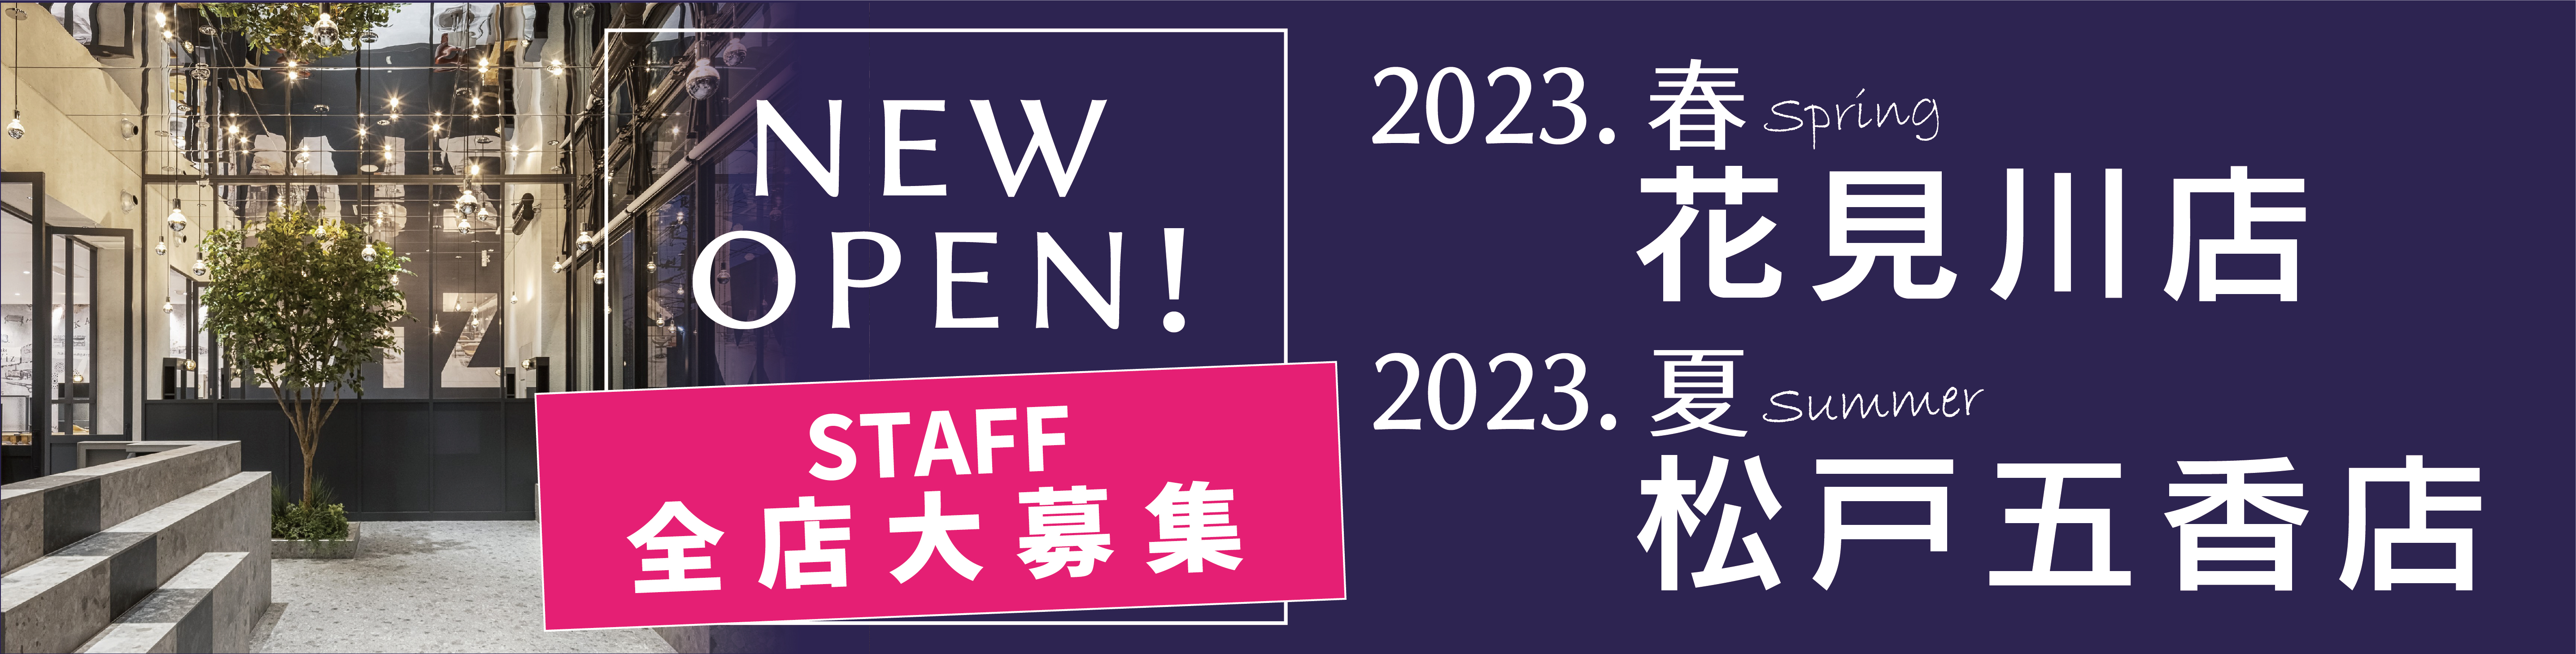 千葉県の美容室Wizの美容師求人・募集・転職・就職・採用情報